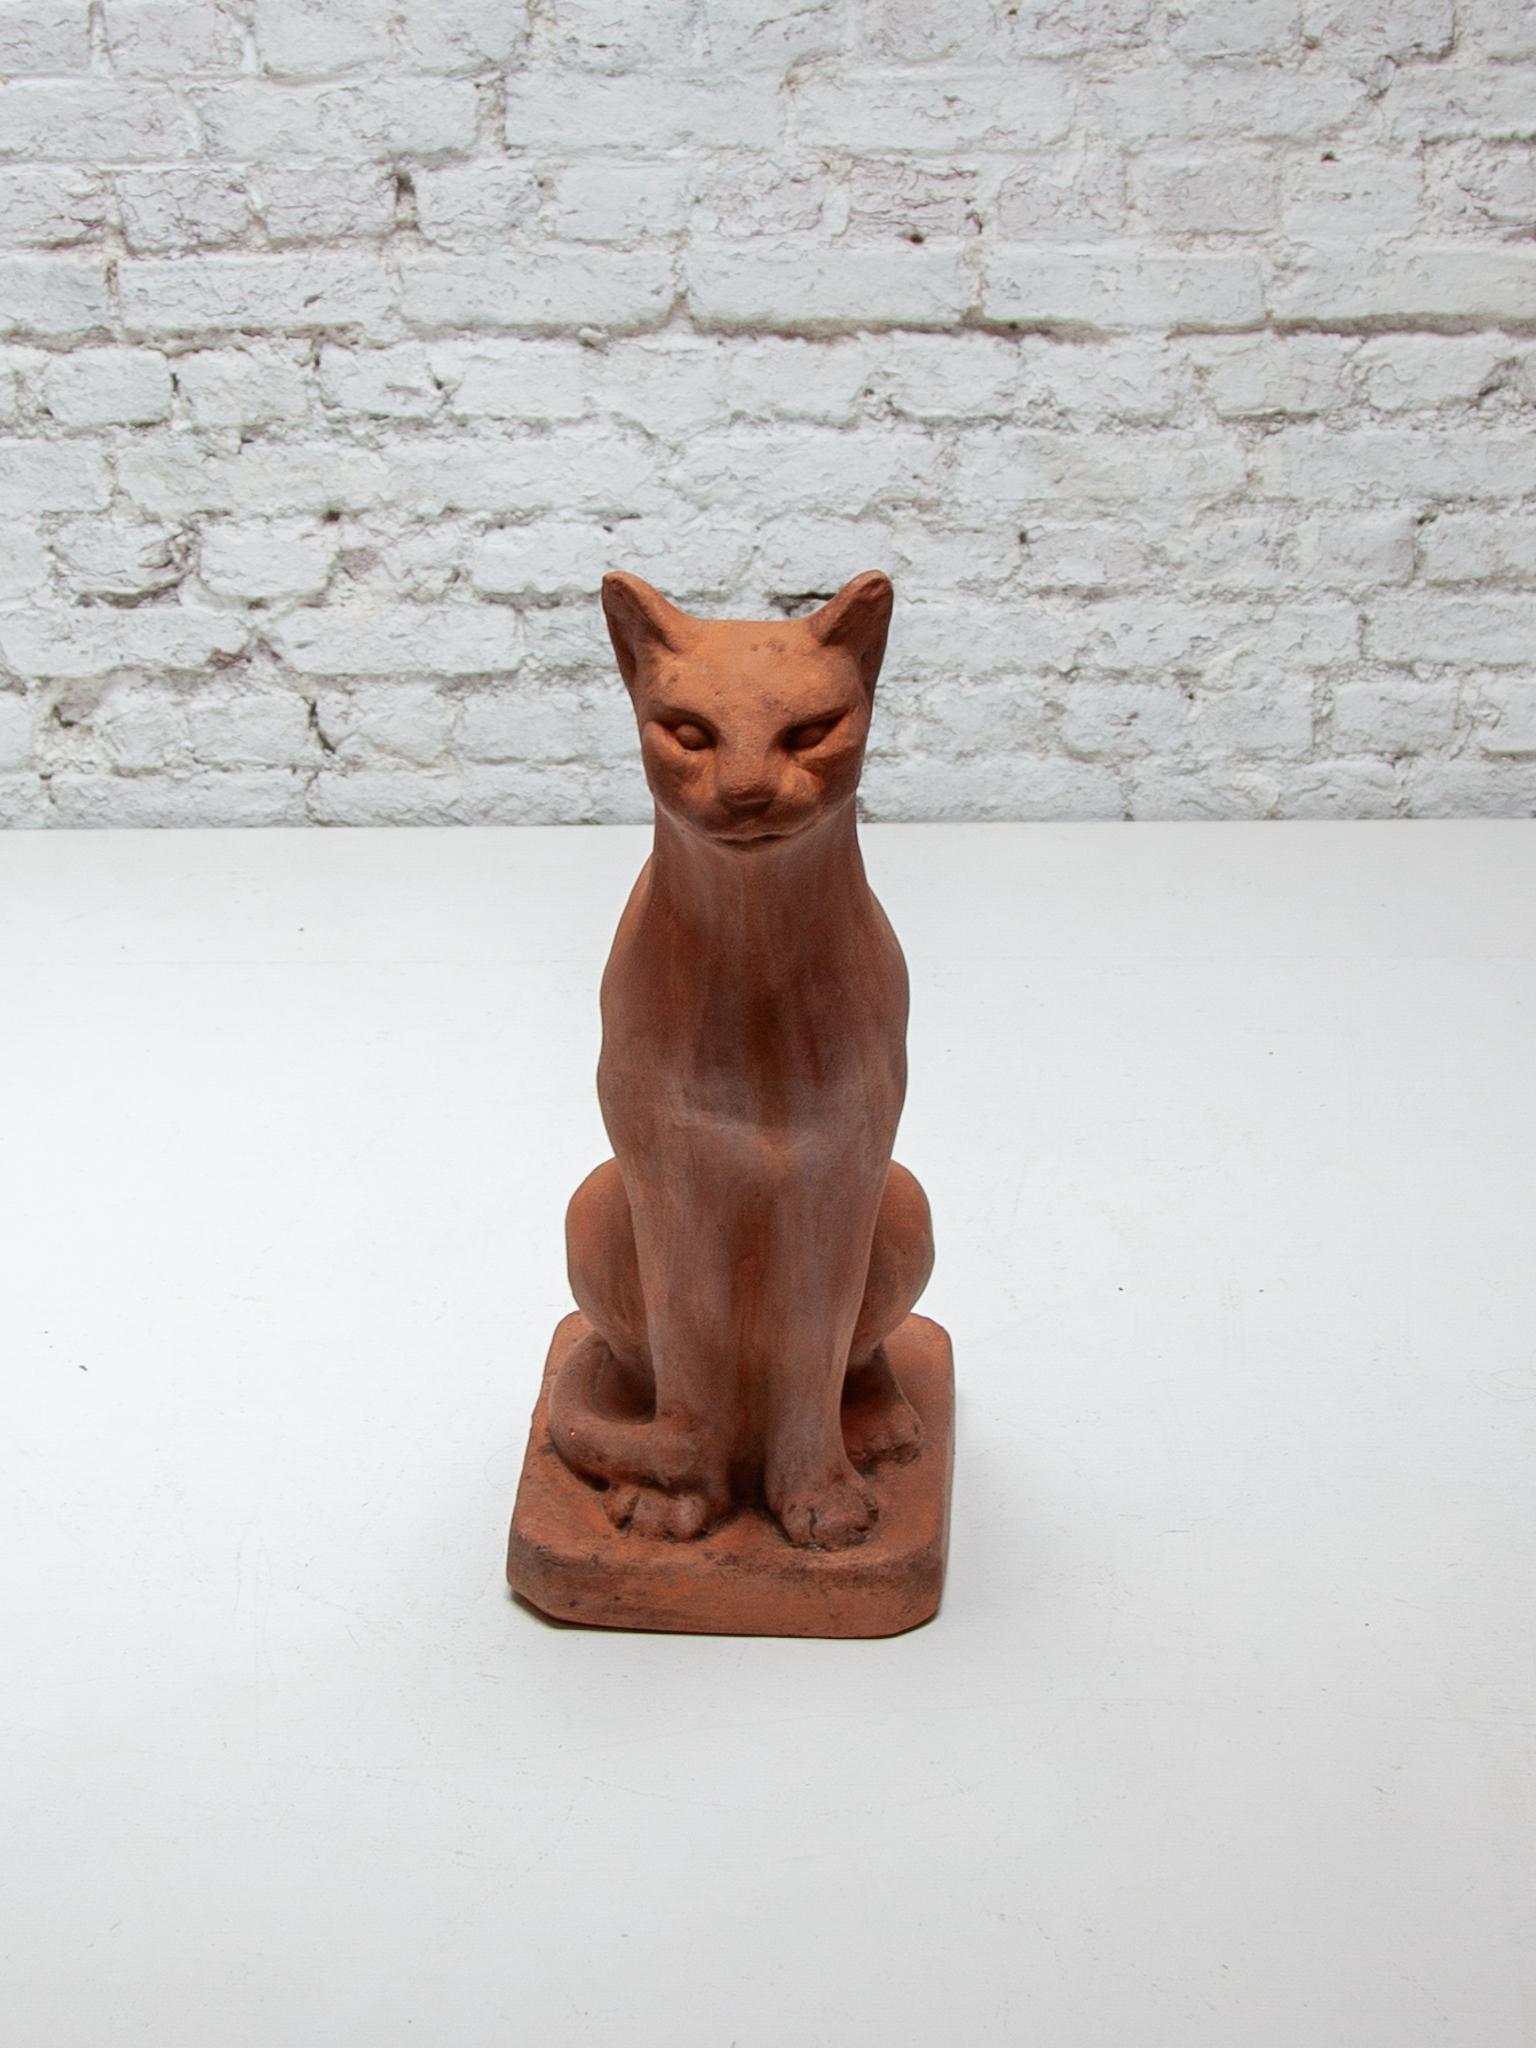 Die Katze ist aus Terrakotta gegossen und hat einen lebensechten Ausdruck. Eine schöne Statue für drinnen und draußen.
Höhe.52 cm. in sehr gutem Originalzustand.
